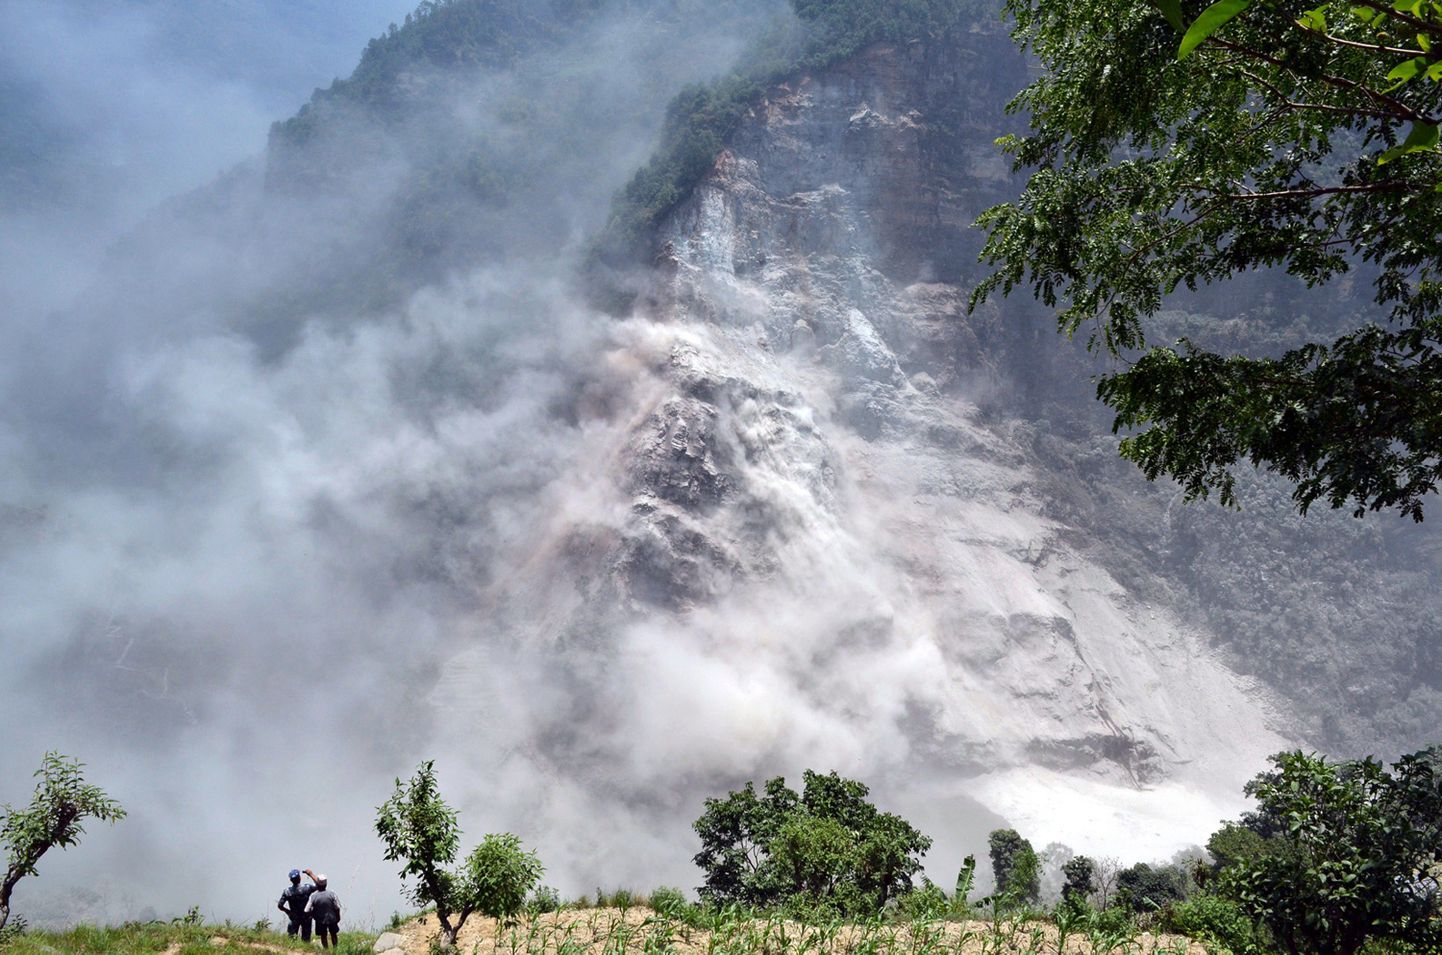 Möödunud kuul toimus Nepali loodeosas Myagdi piirkonnas samuti maalihe.